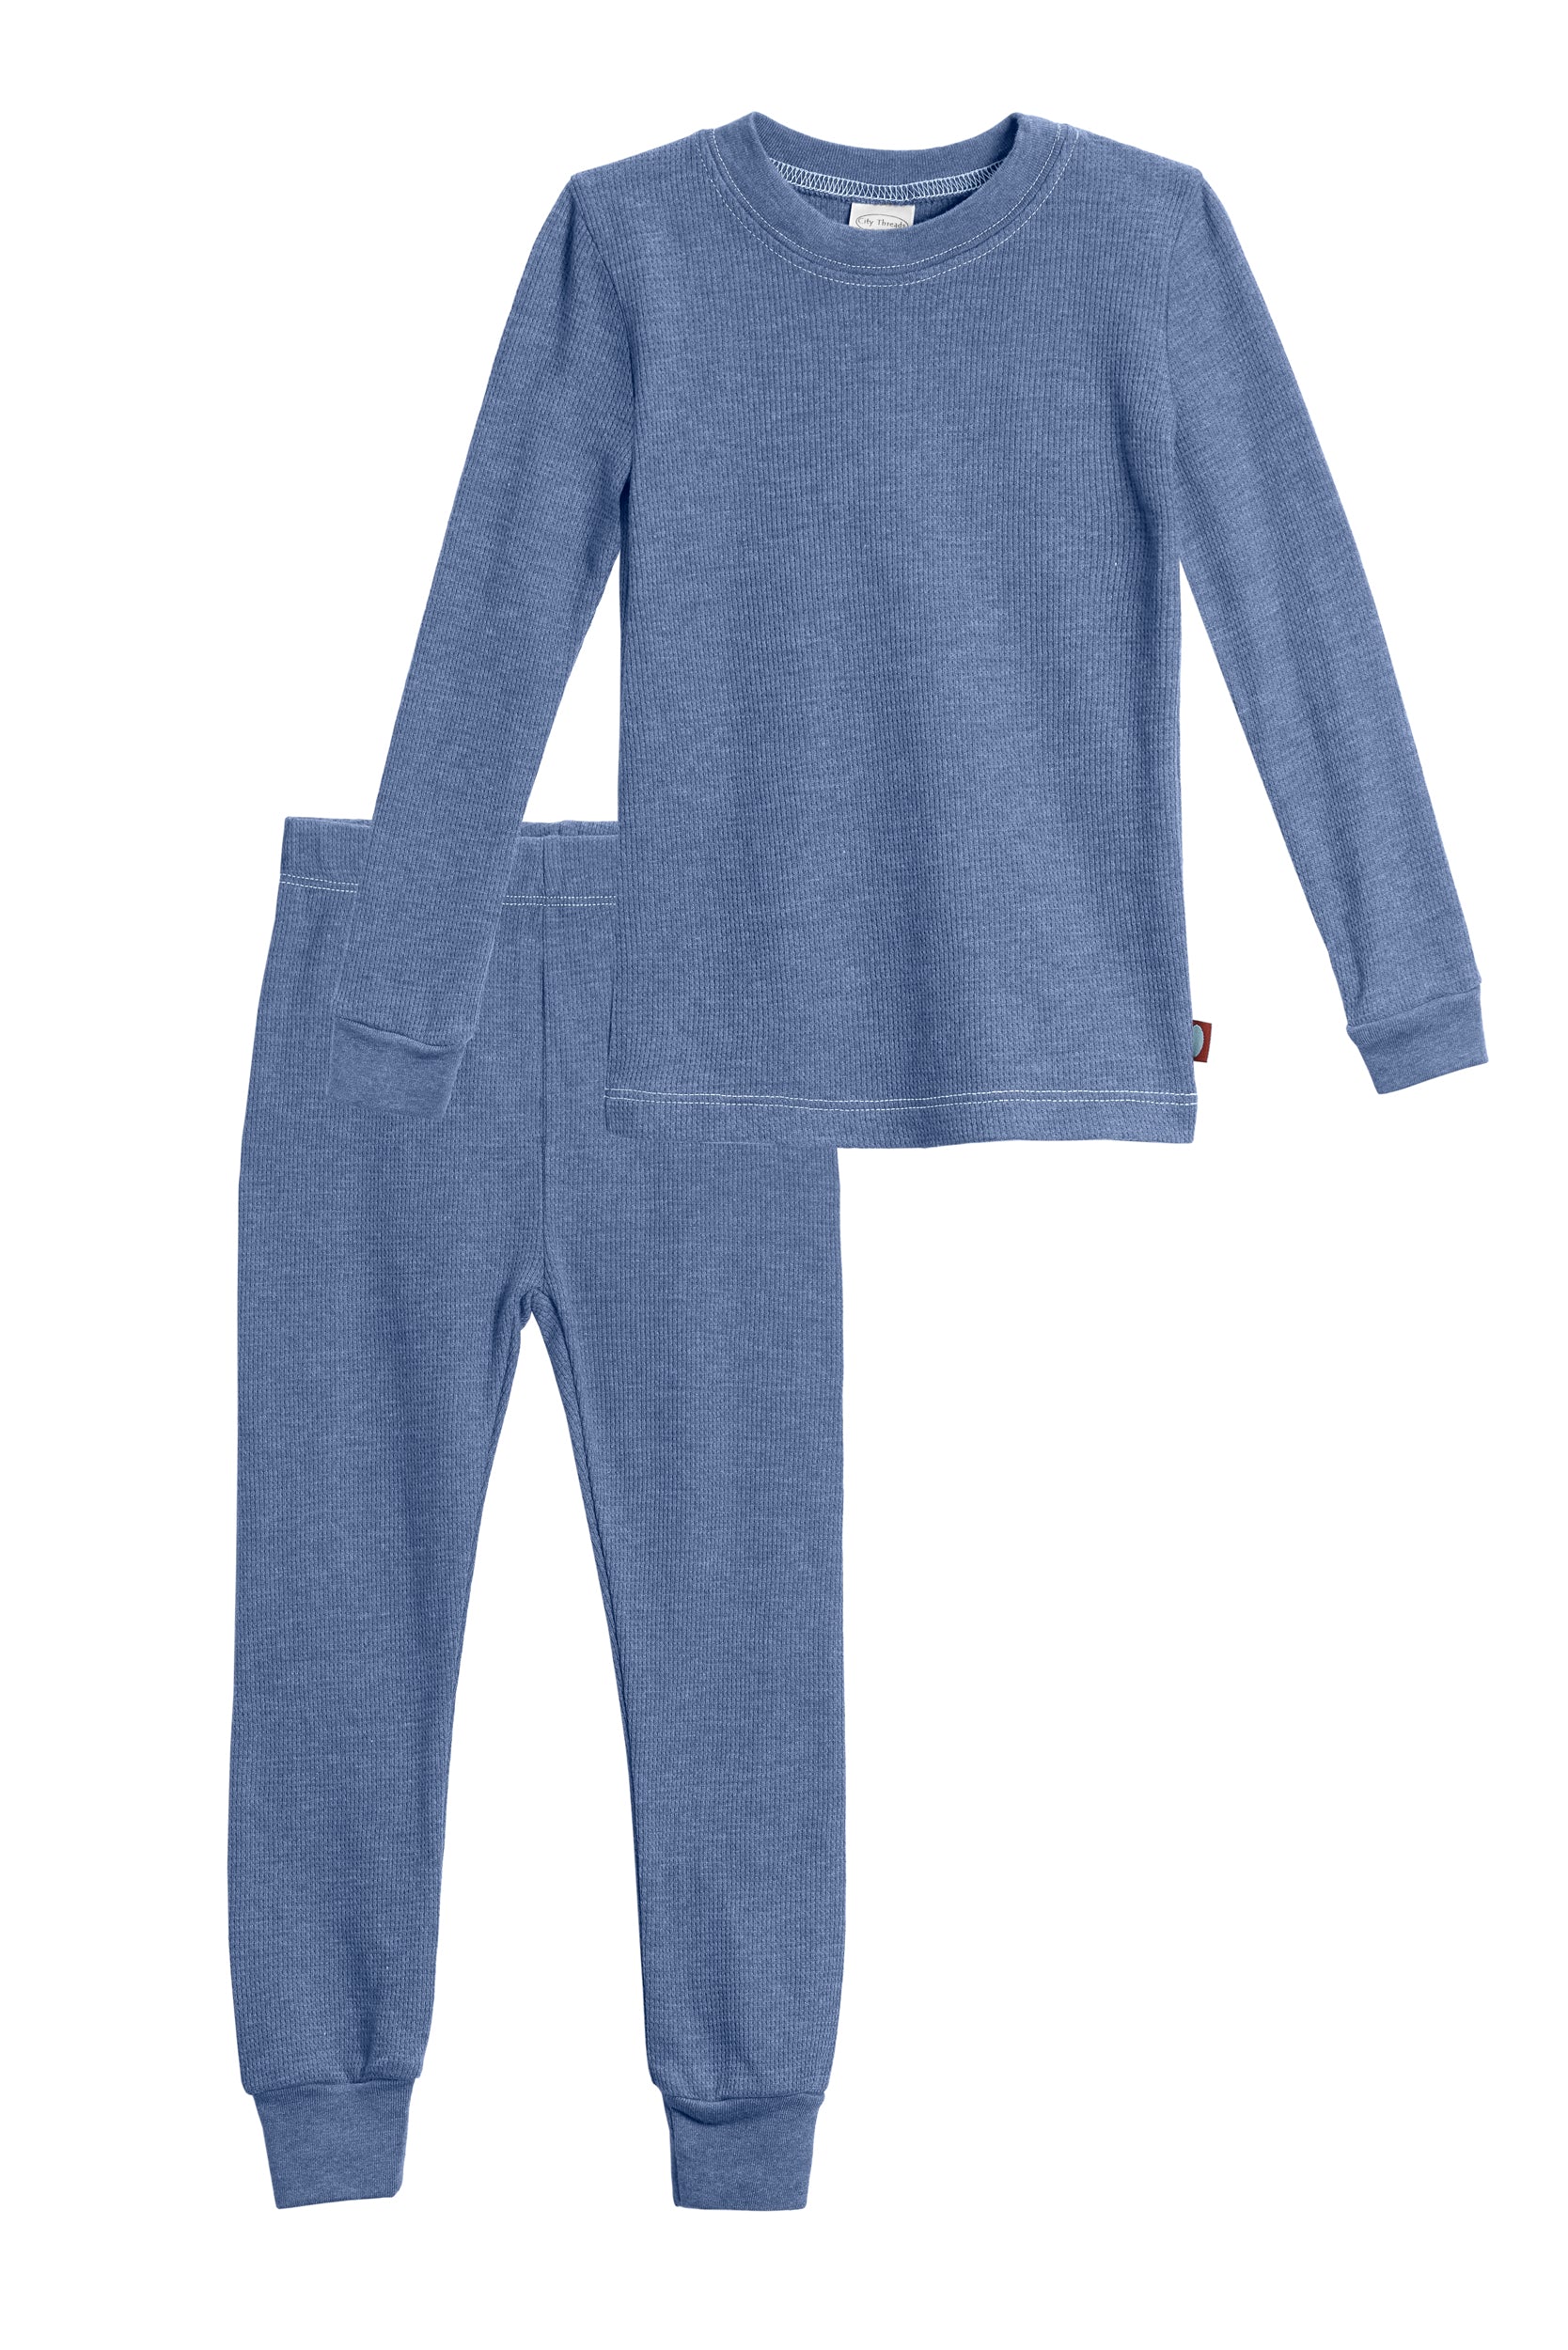 Two-Piece Suit Children's Warm Set Clothes Boys Girls Long Johns